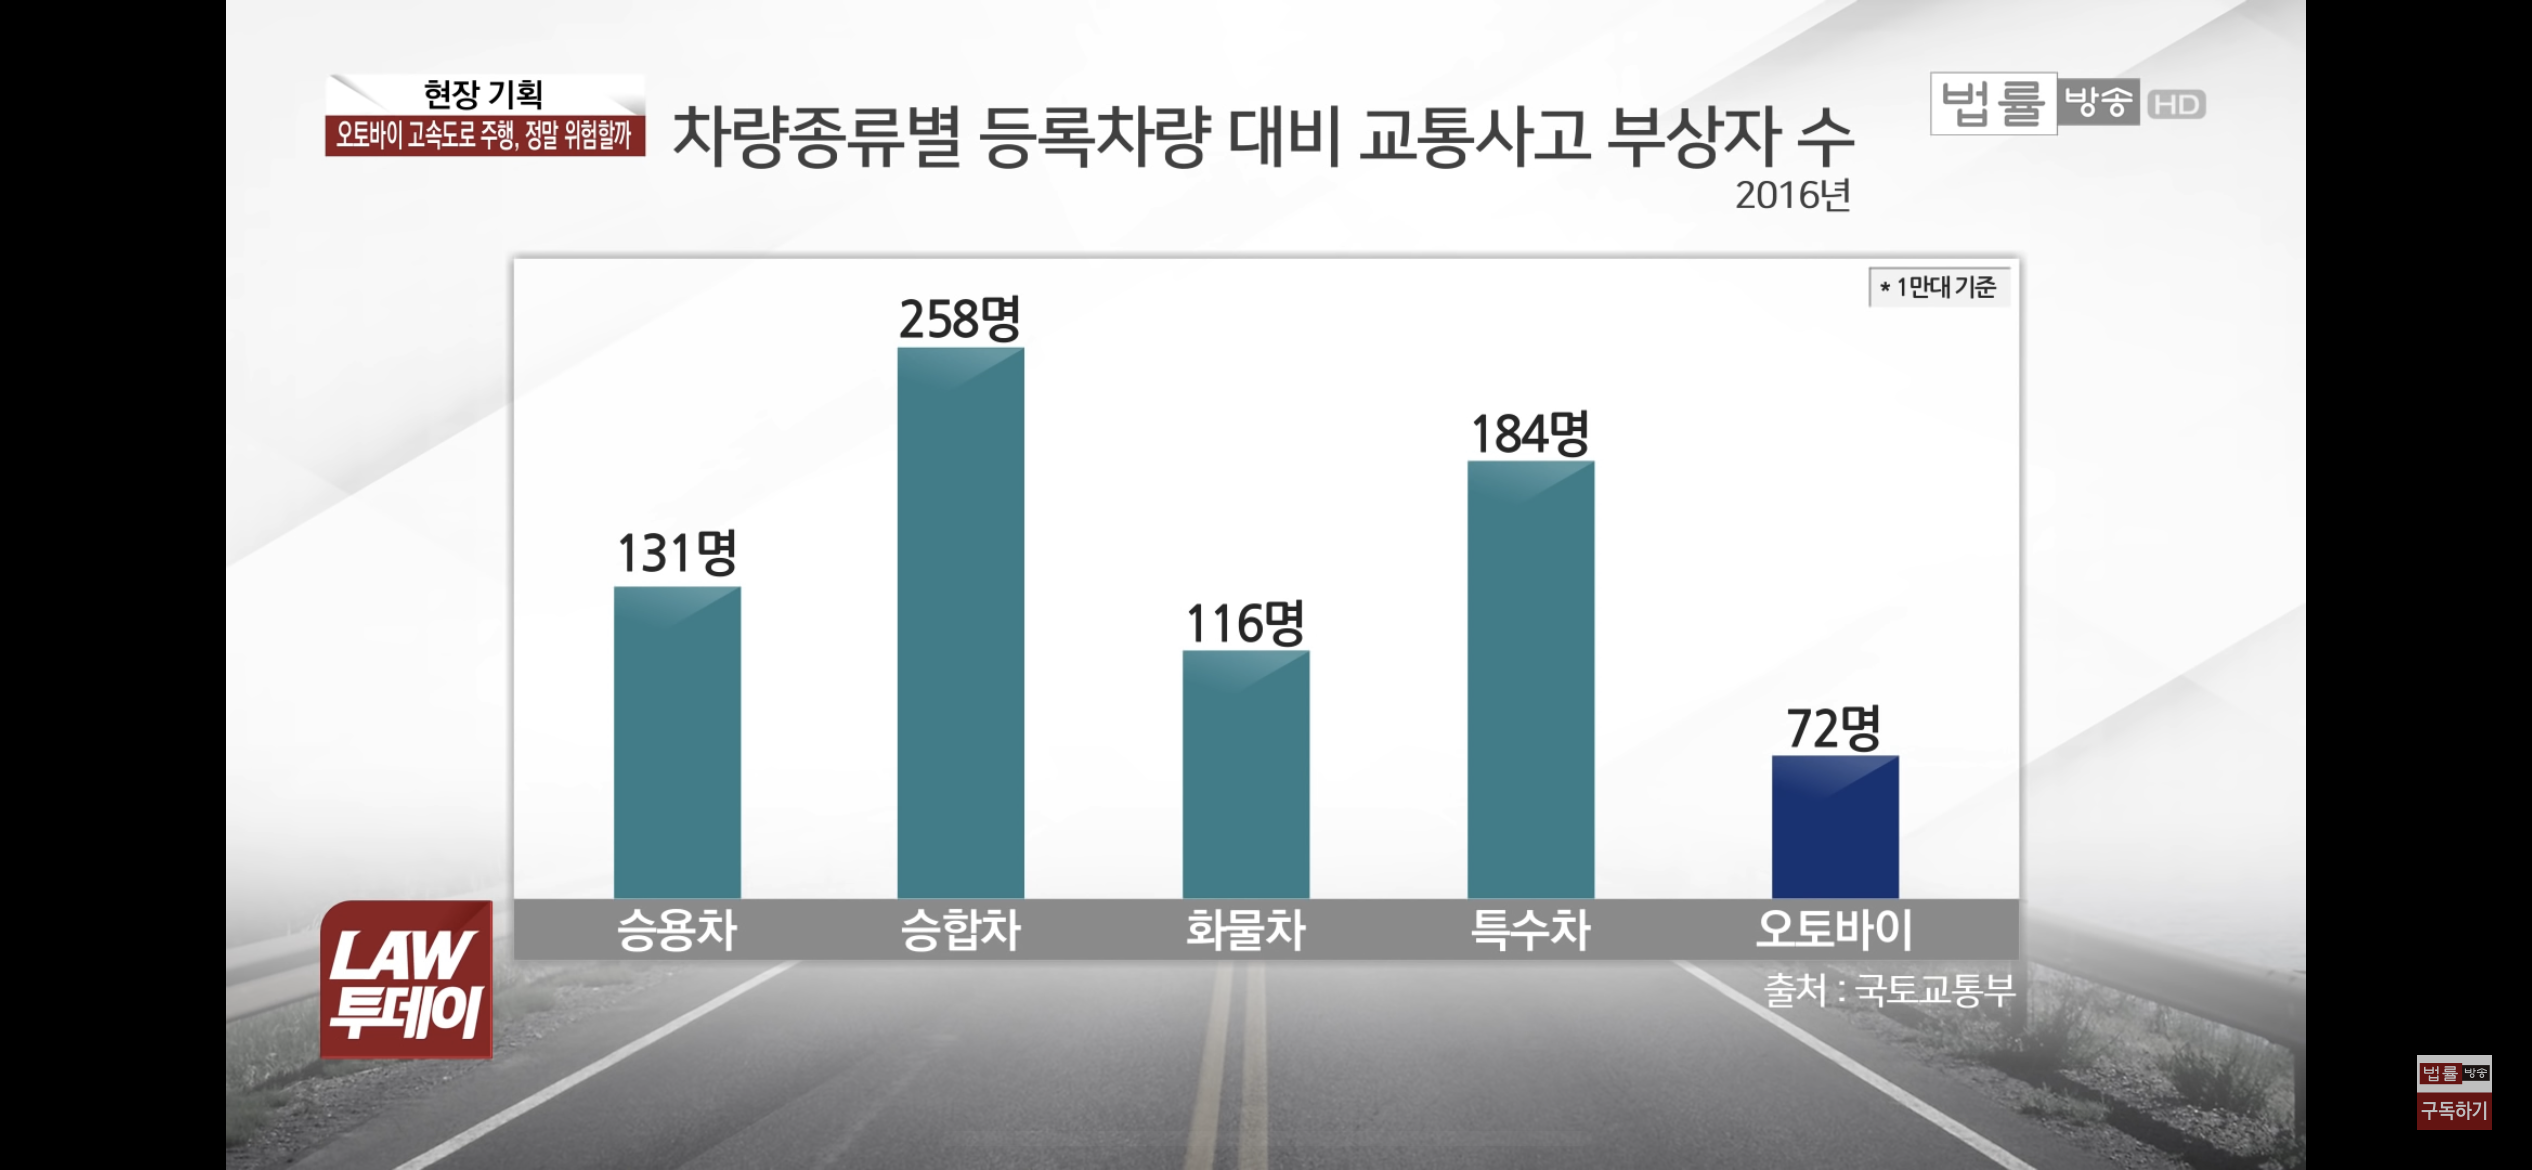 오토바이 관련 의외인 통계